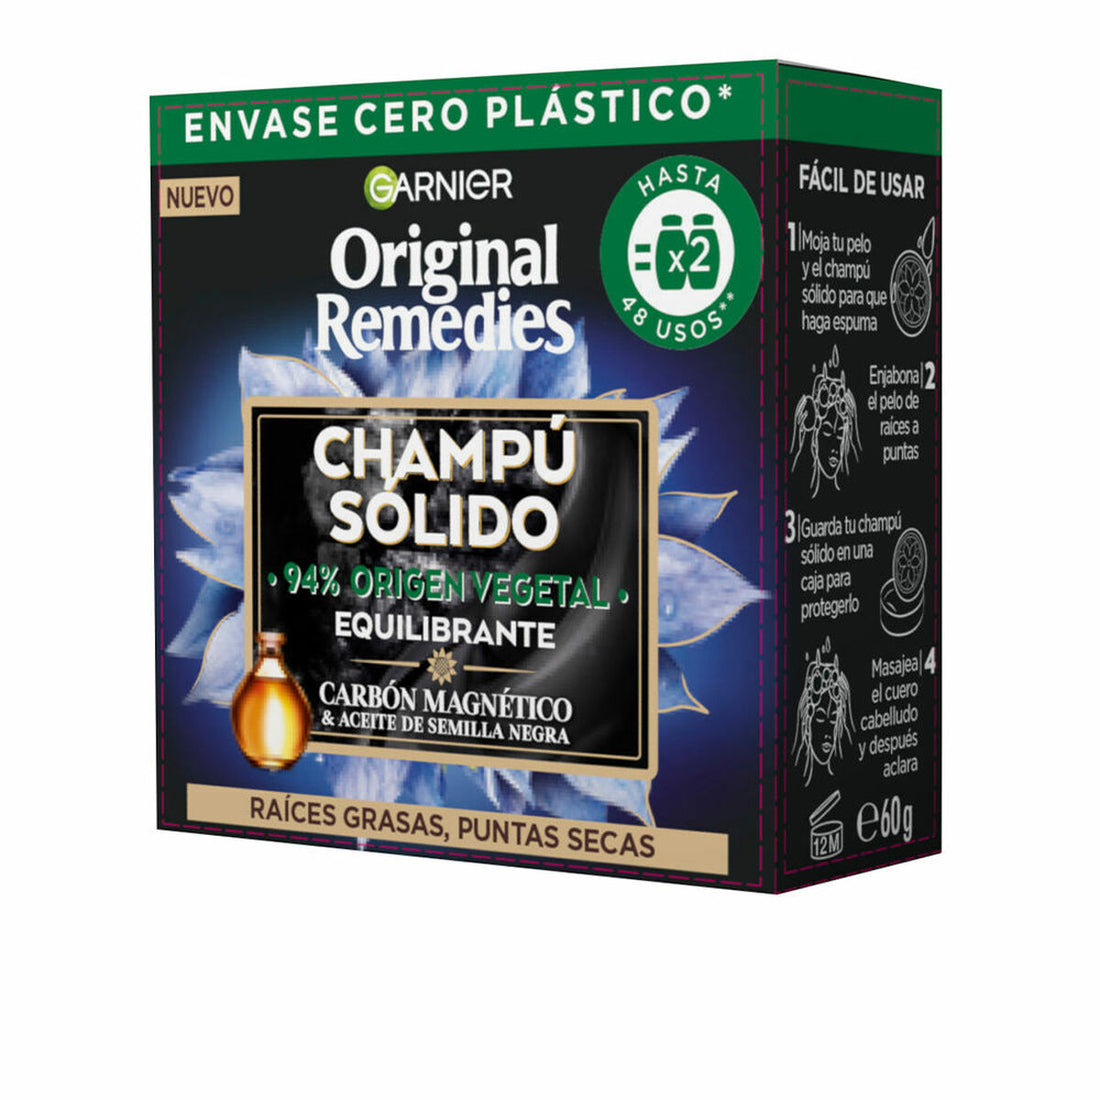 festes Shampoo Garnier Original Remedies Ausgleichende Magnetischer Kohlenstoff (60 g)